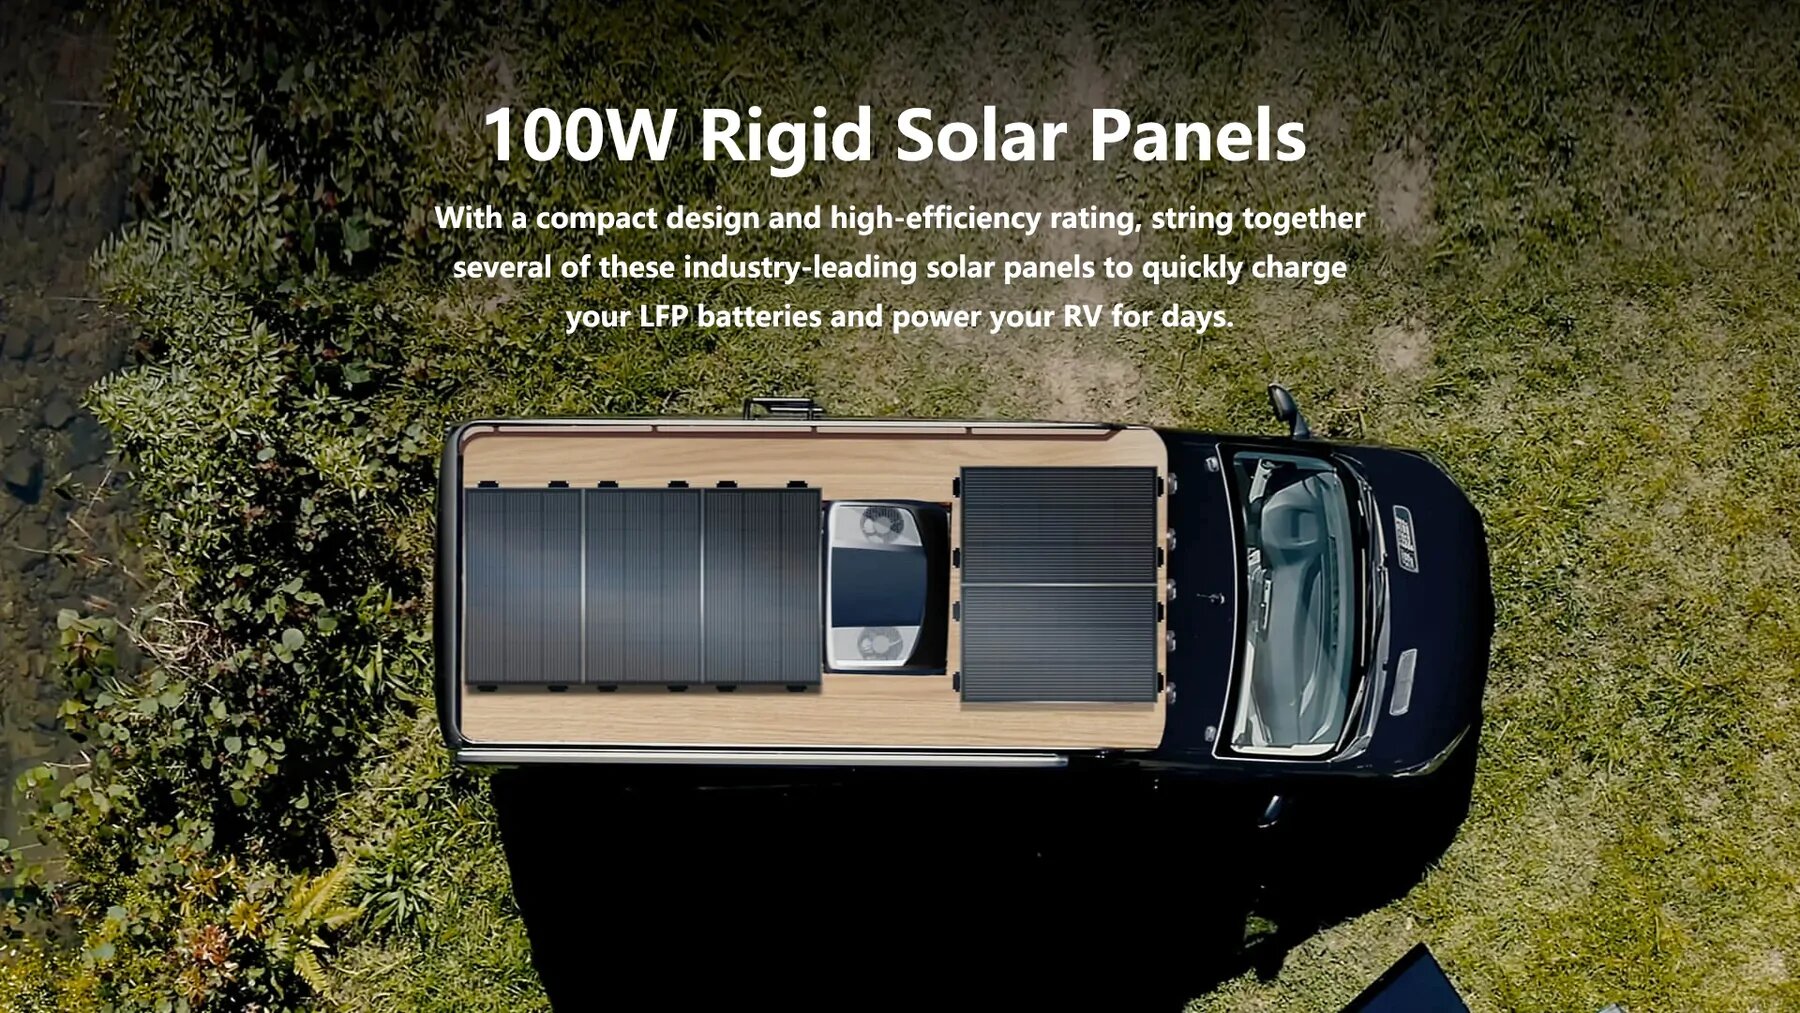 Achats 100 % sécurisés Garantie fiable Livraison gratuite Panneau solaire rigide 100 W EcoFlow